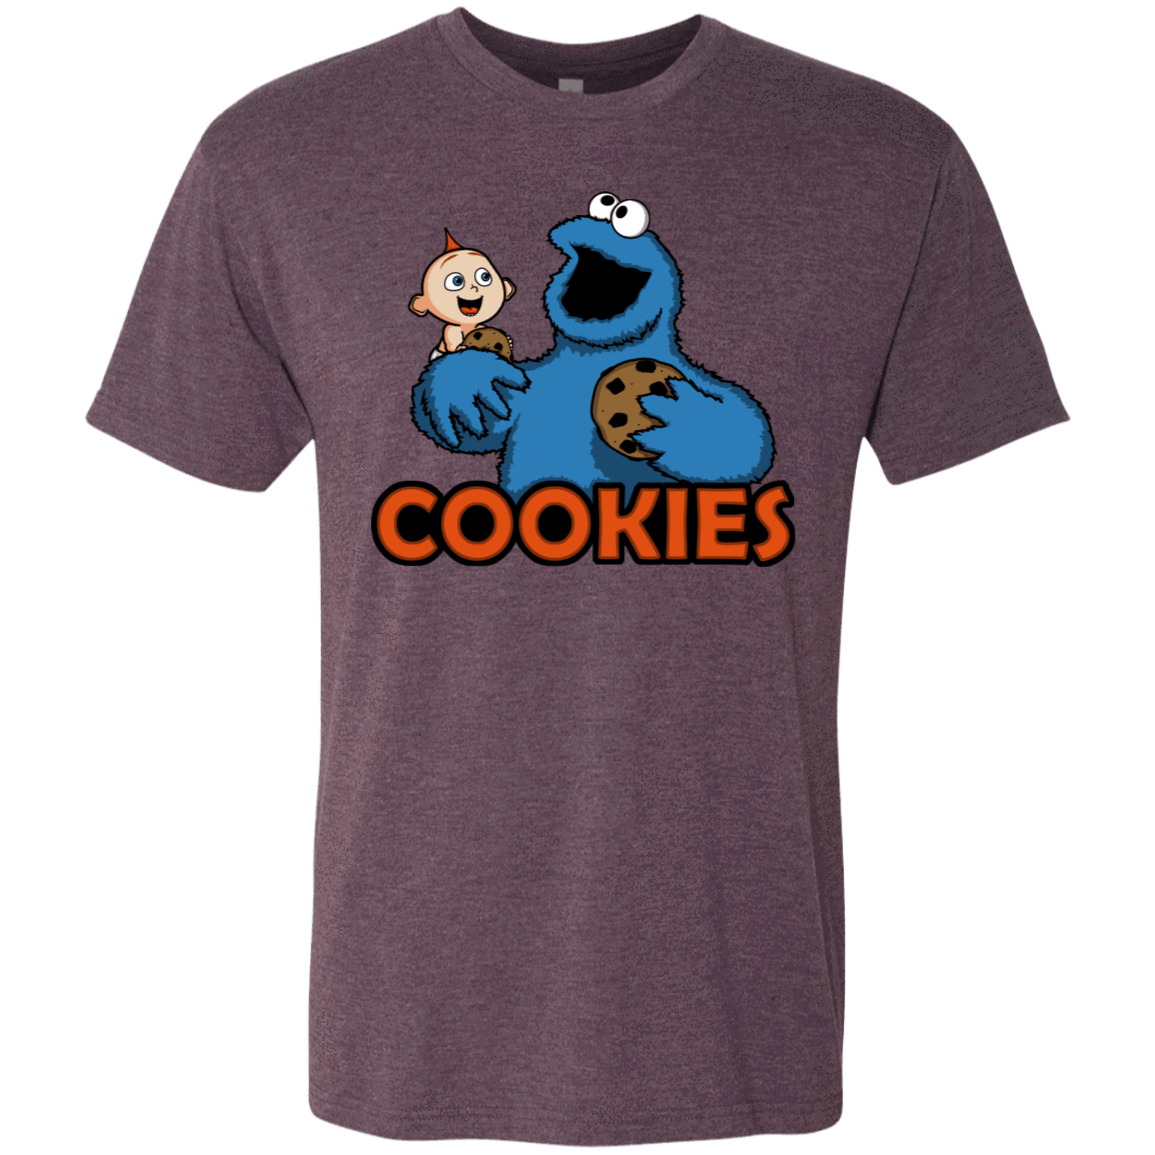 T-Shirts Vintage Purple / S Cookies Men's Triblend T-Shirt